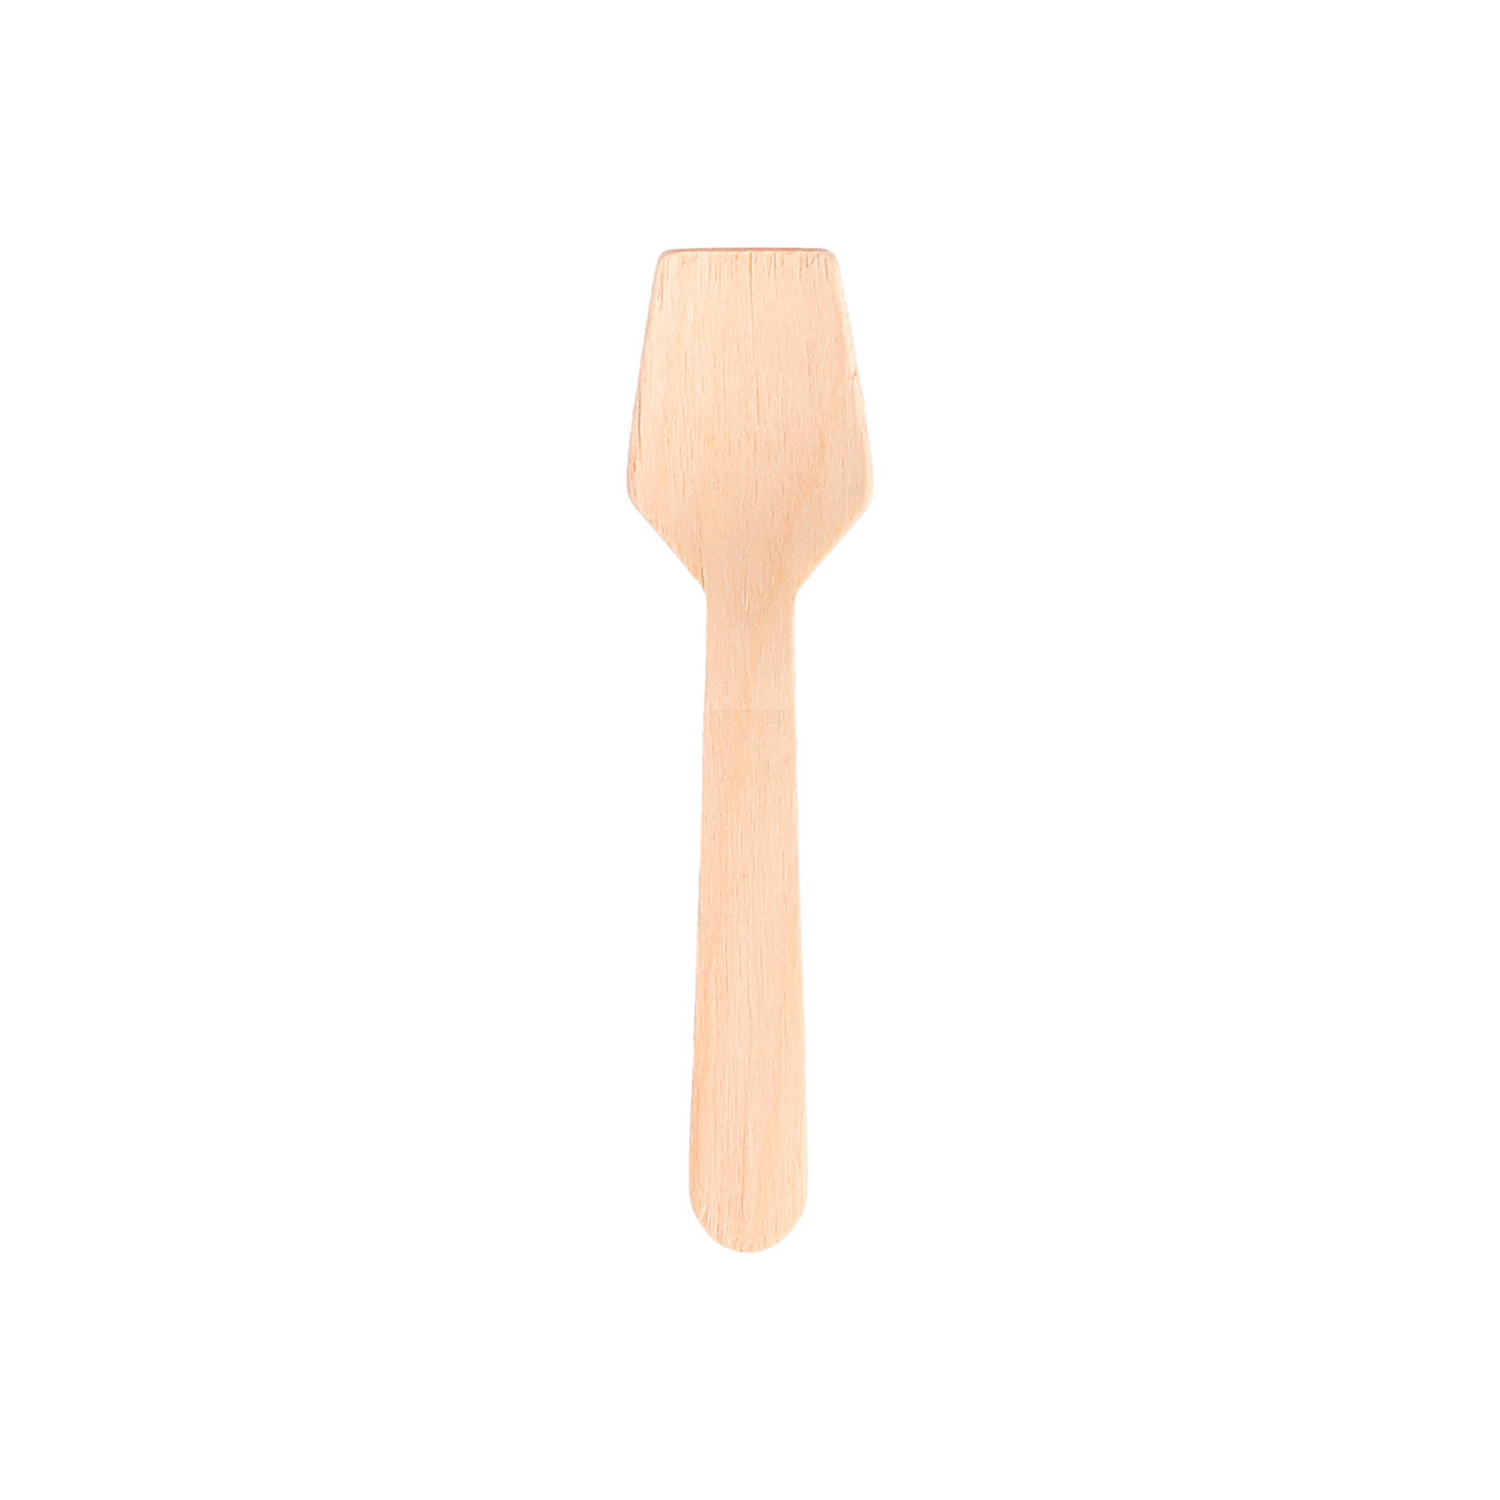 petite-cuillere-spatule-en-bois-9cm5-par-1000-prosaveurs